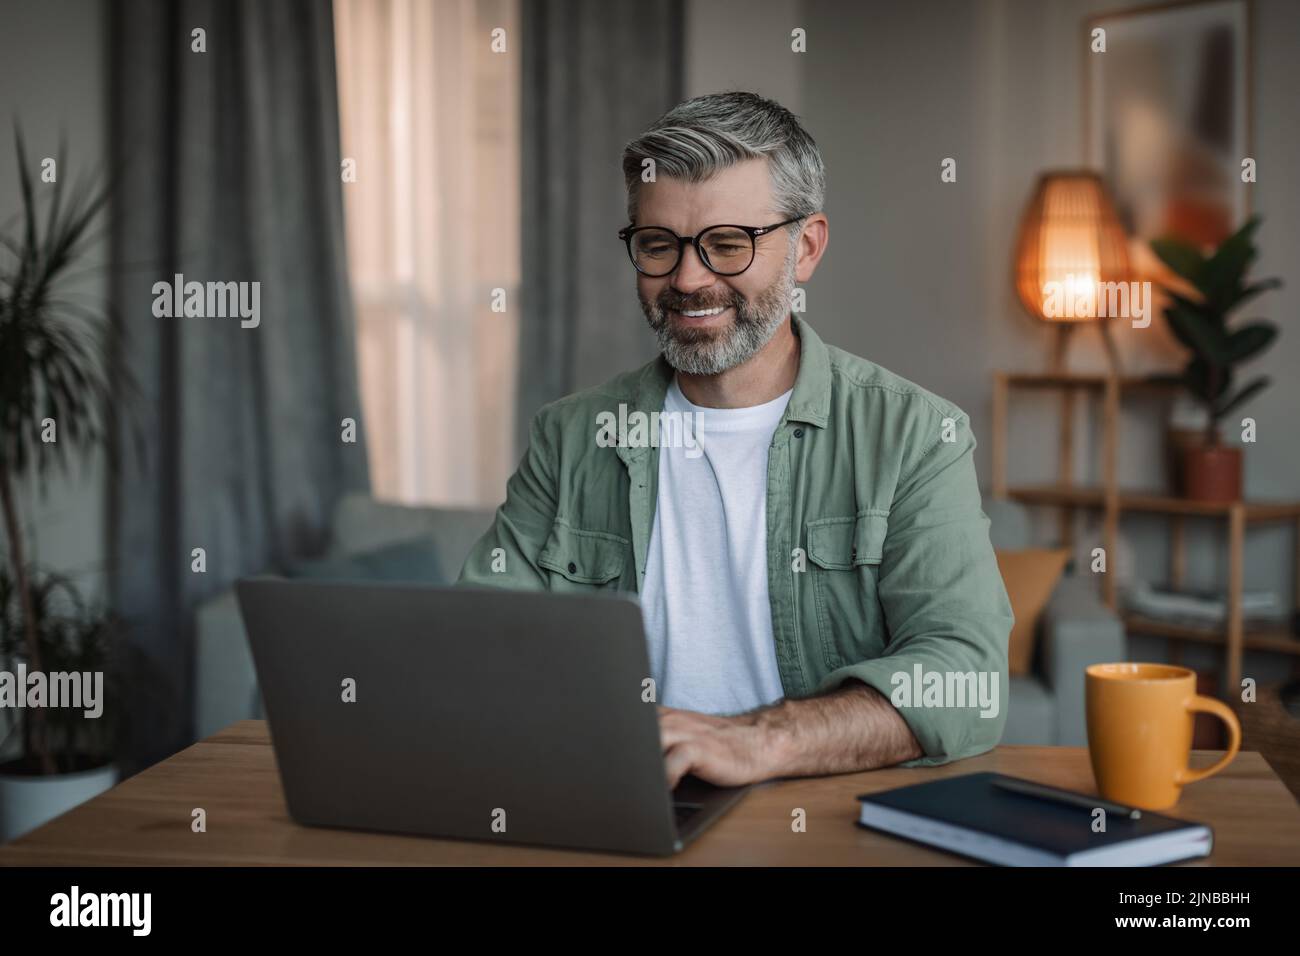 Alegre hombre europeo anciano con barba en gafas relojes lección de vídeo, charlando en el ordenador Foto de stock